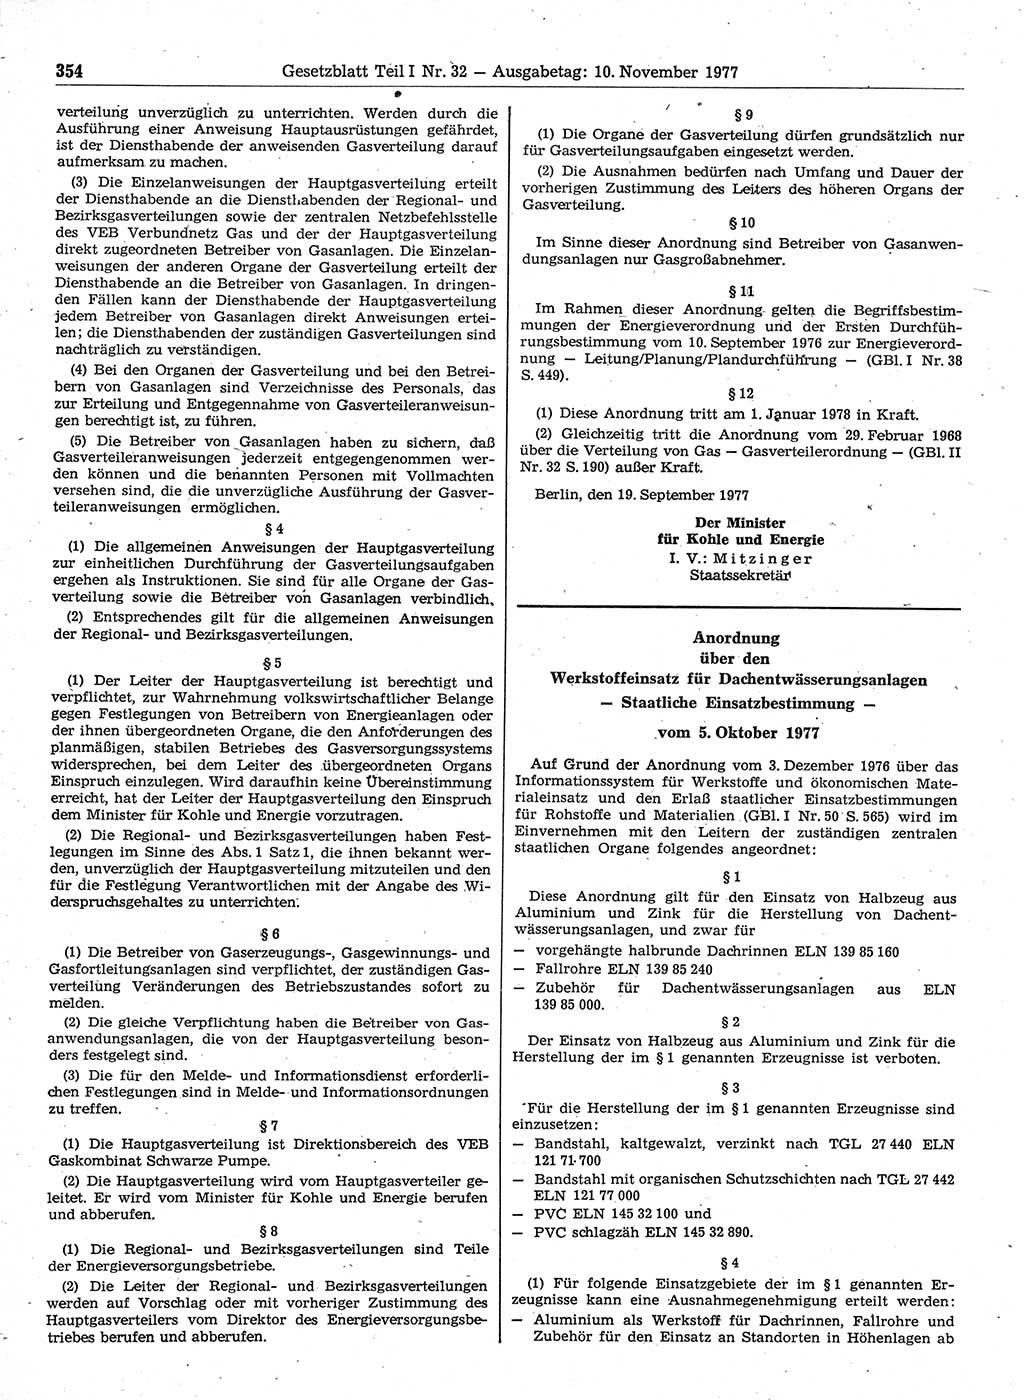 Gesetzblatt (GBl.) der Deutschen Demokratischen Republik (DDR) Teil Ⅰ 1977, Seite 354 (GBl. DDR Ⅰ 1977, S. 354)